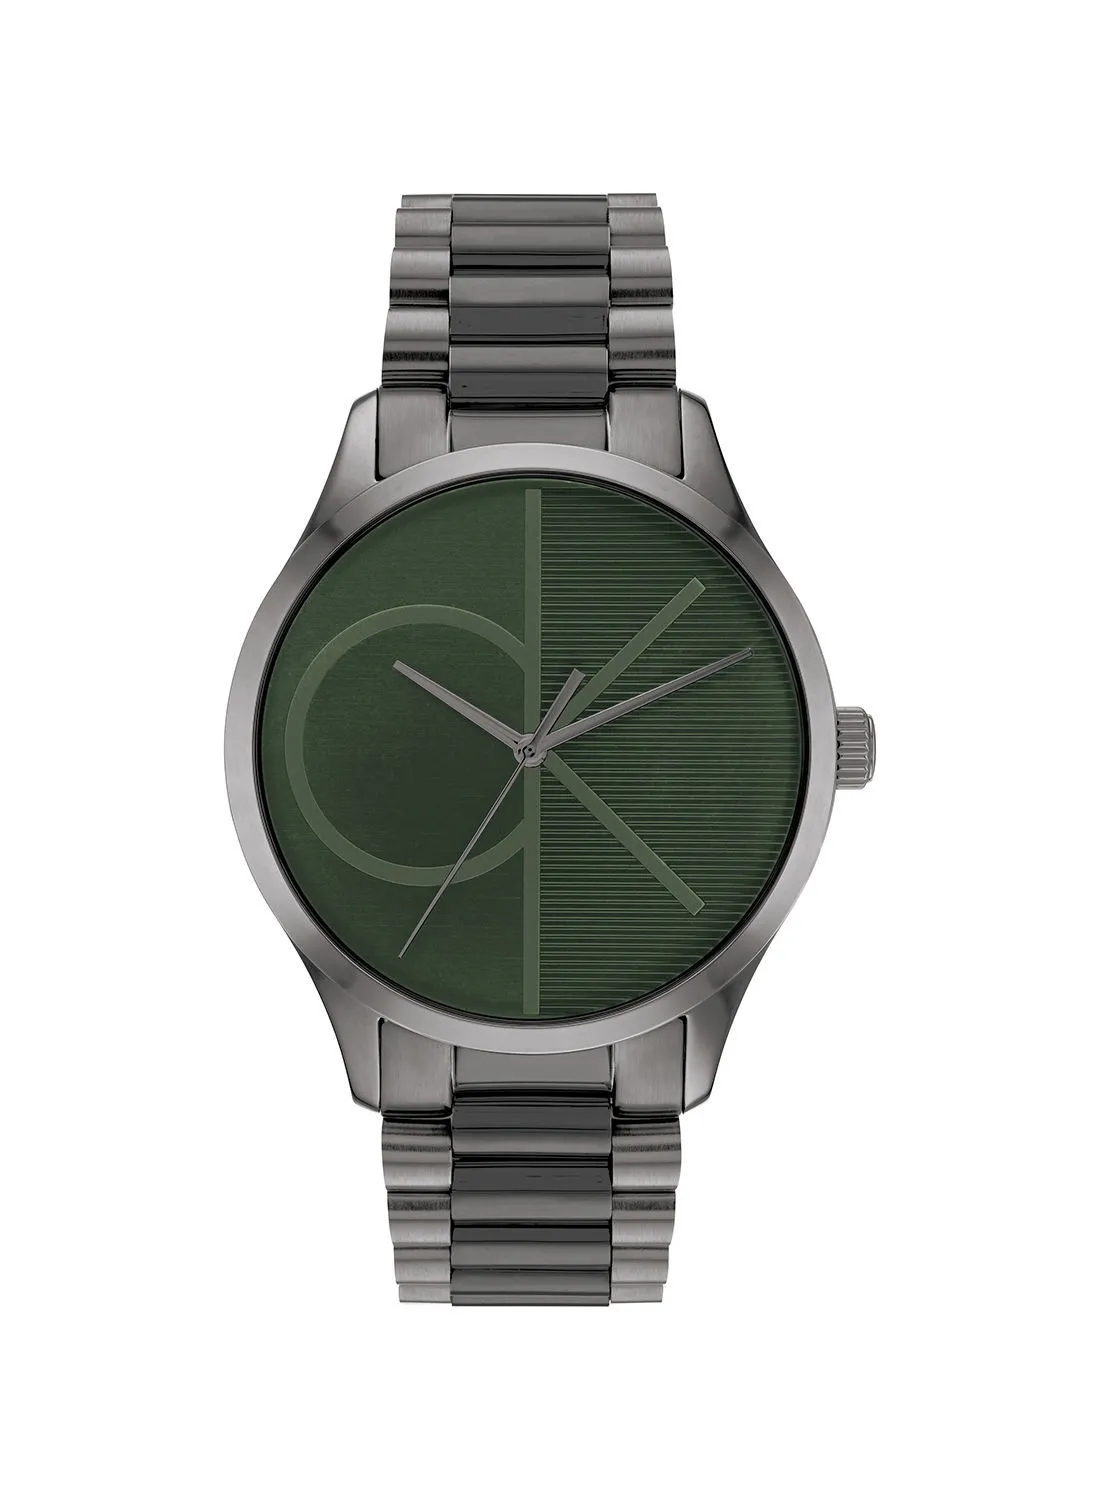 CALVIN KLEIN Iconic Unisex Stainless Steel Wrist Watch - 25200164